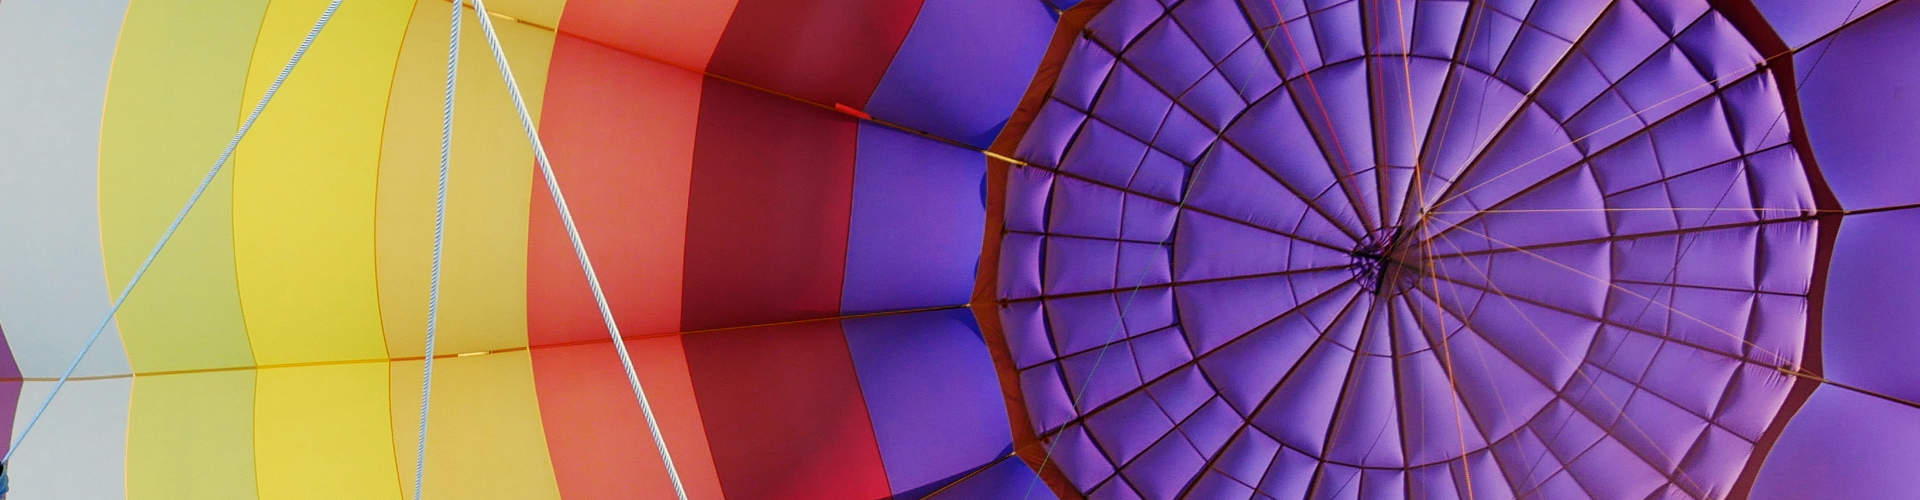 Une montgolfière aux couleurs chatoyantes